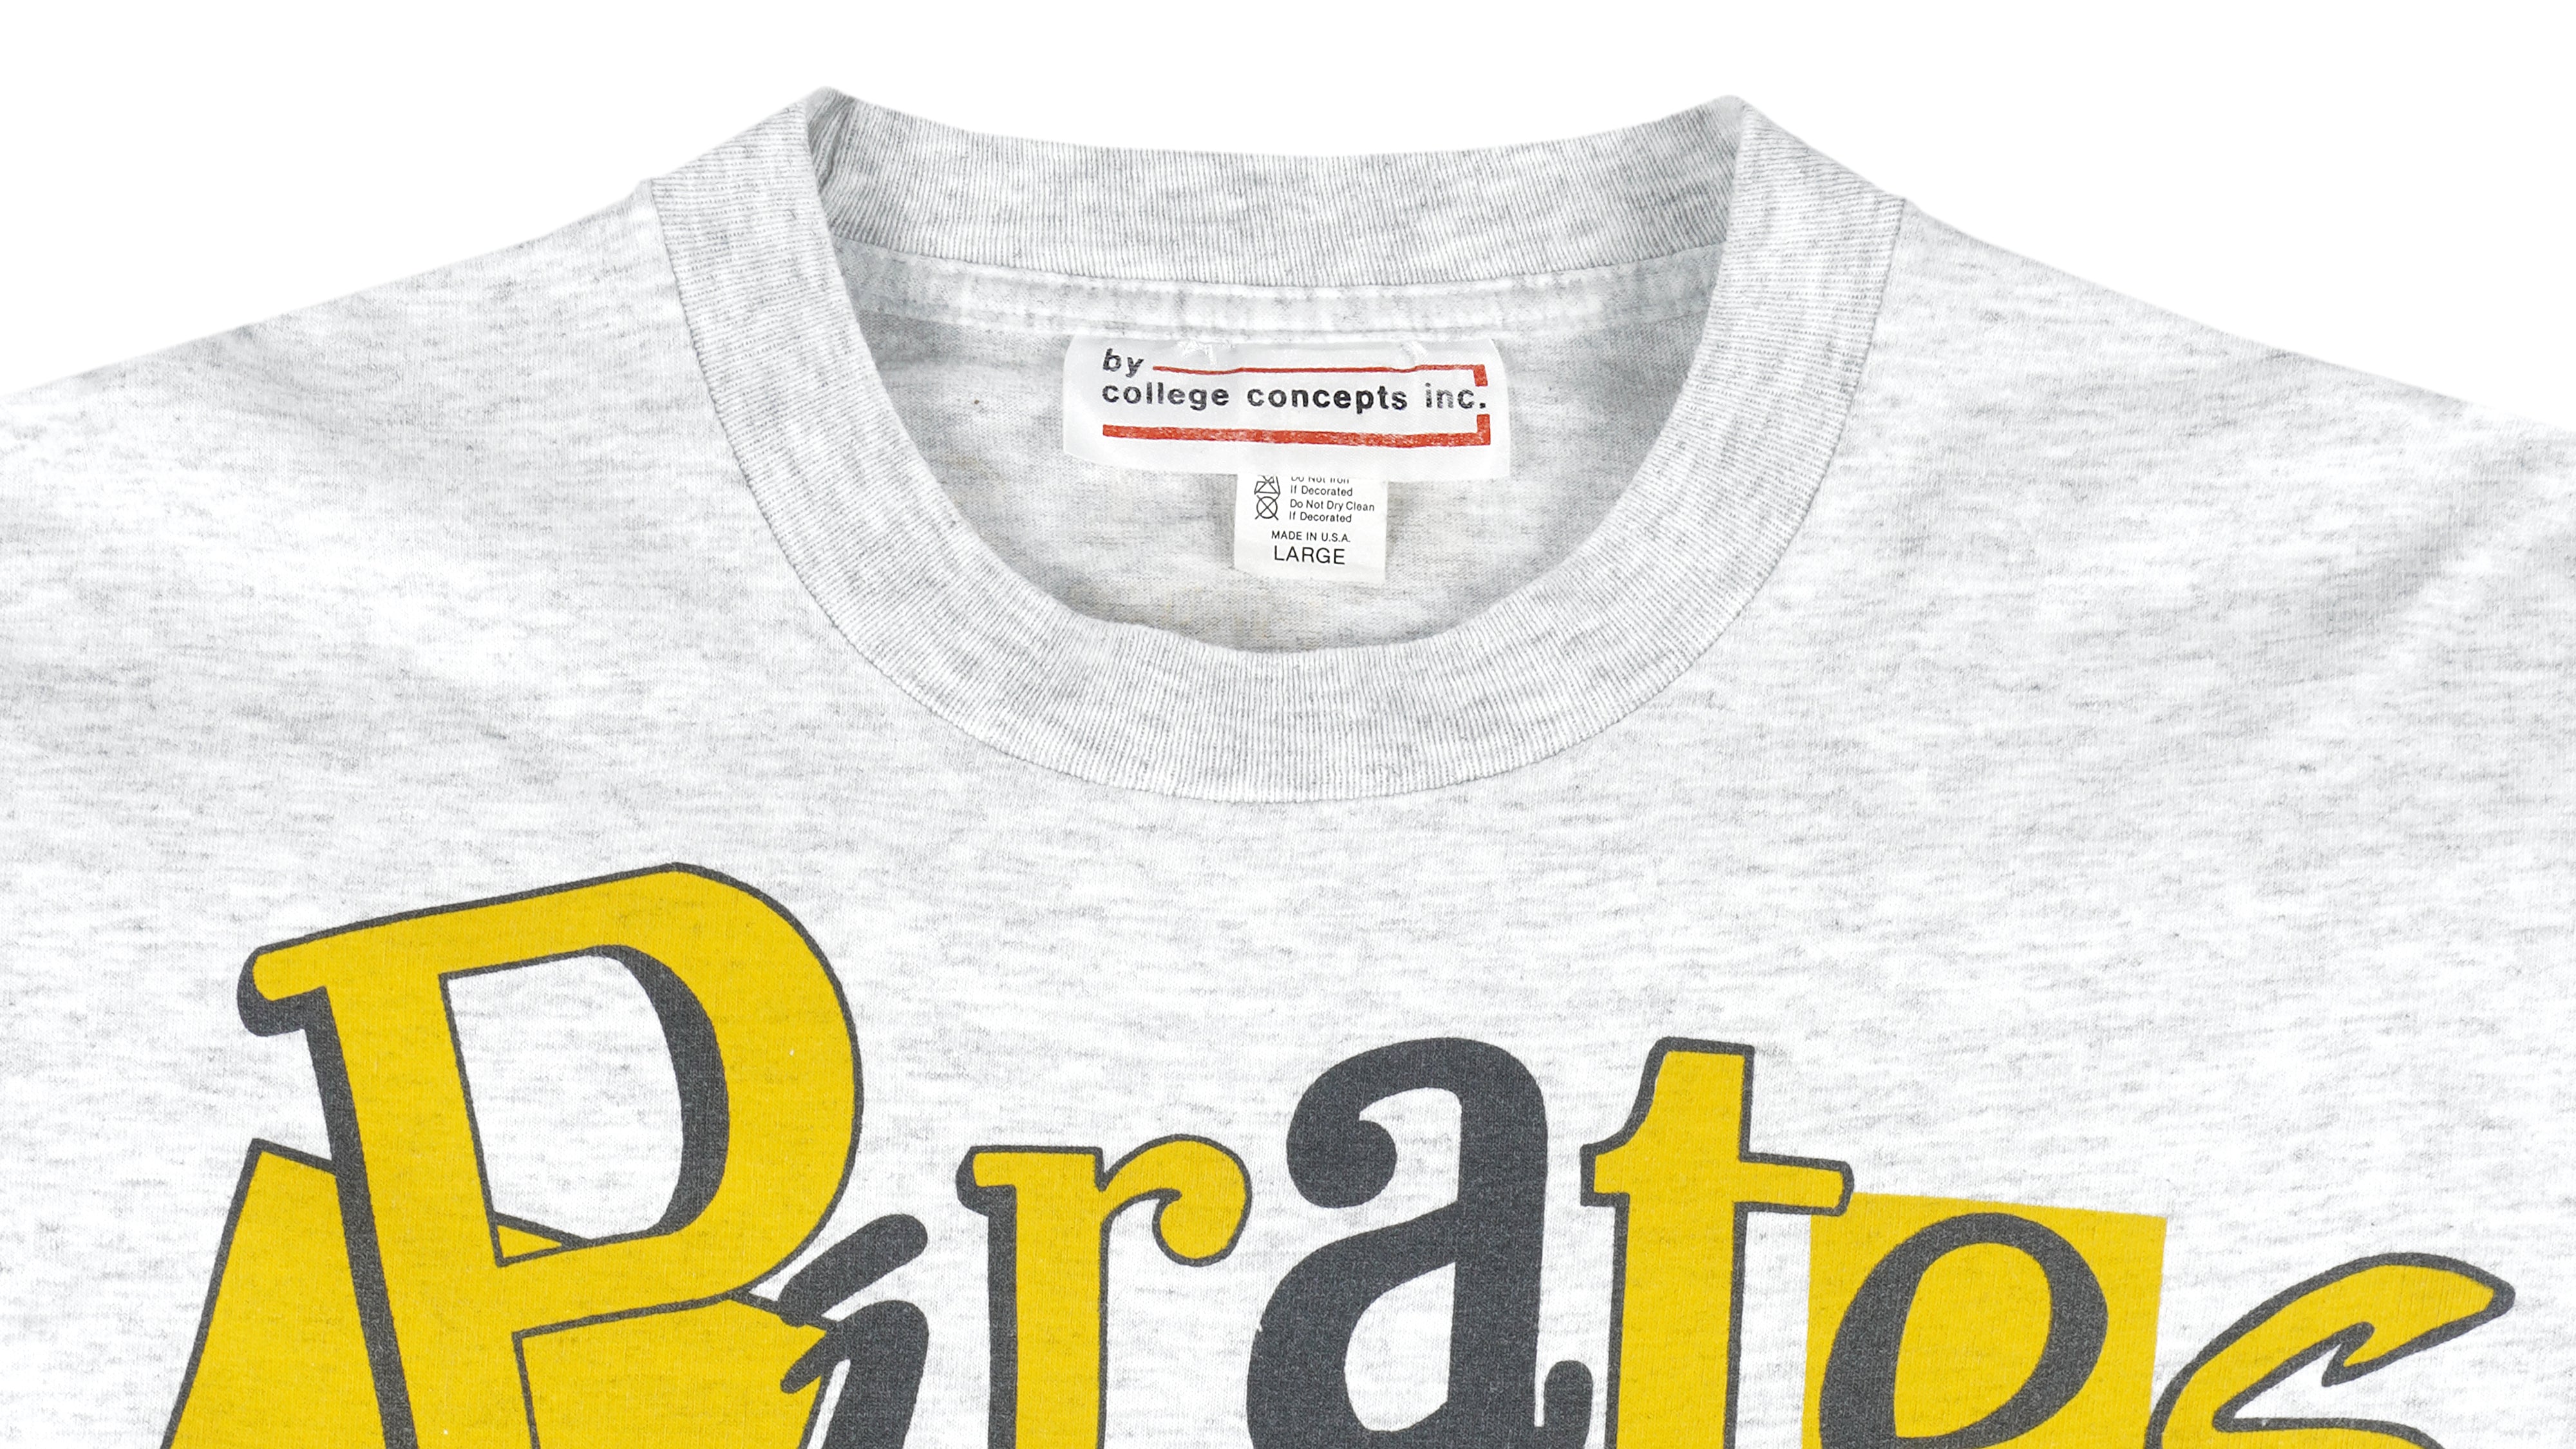 pittsburgh pirates vintage t shirt